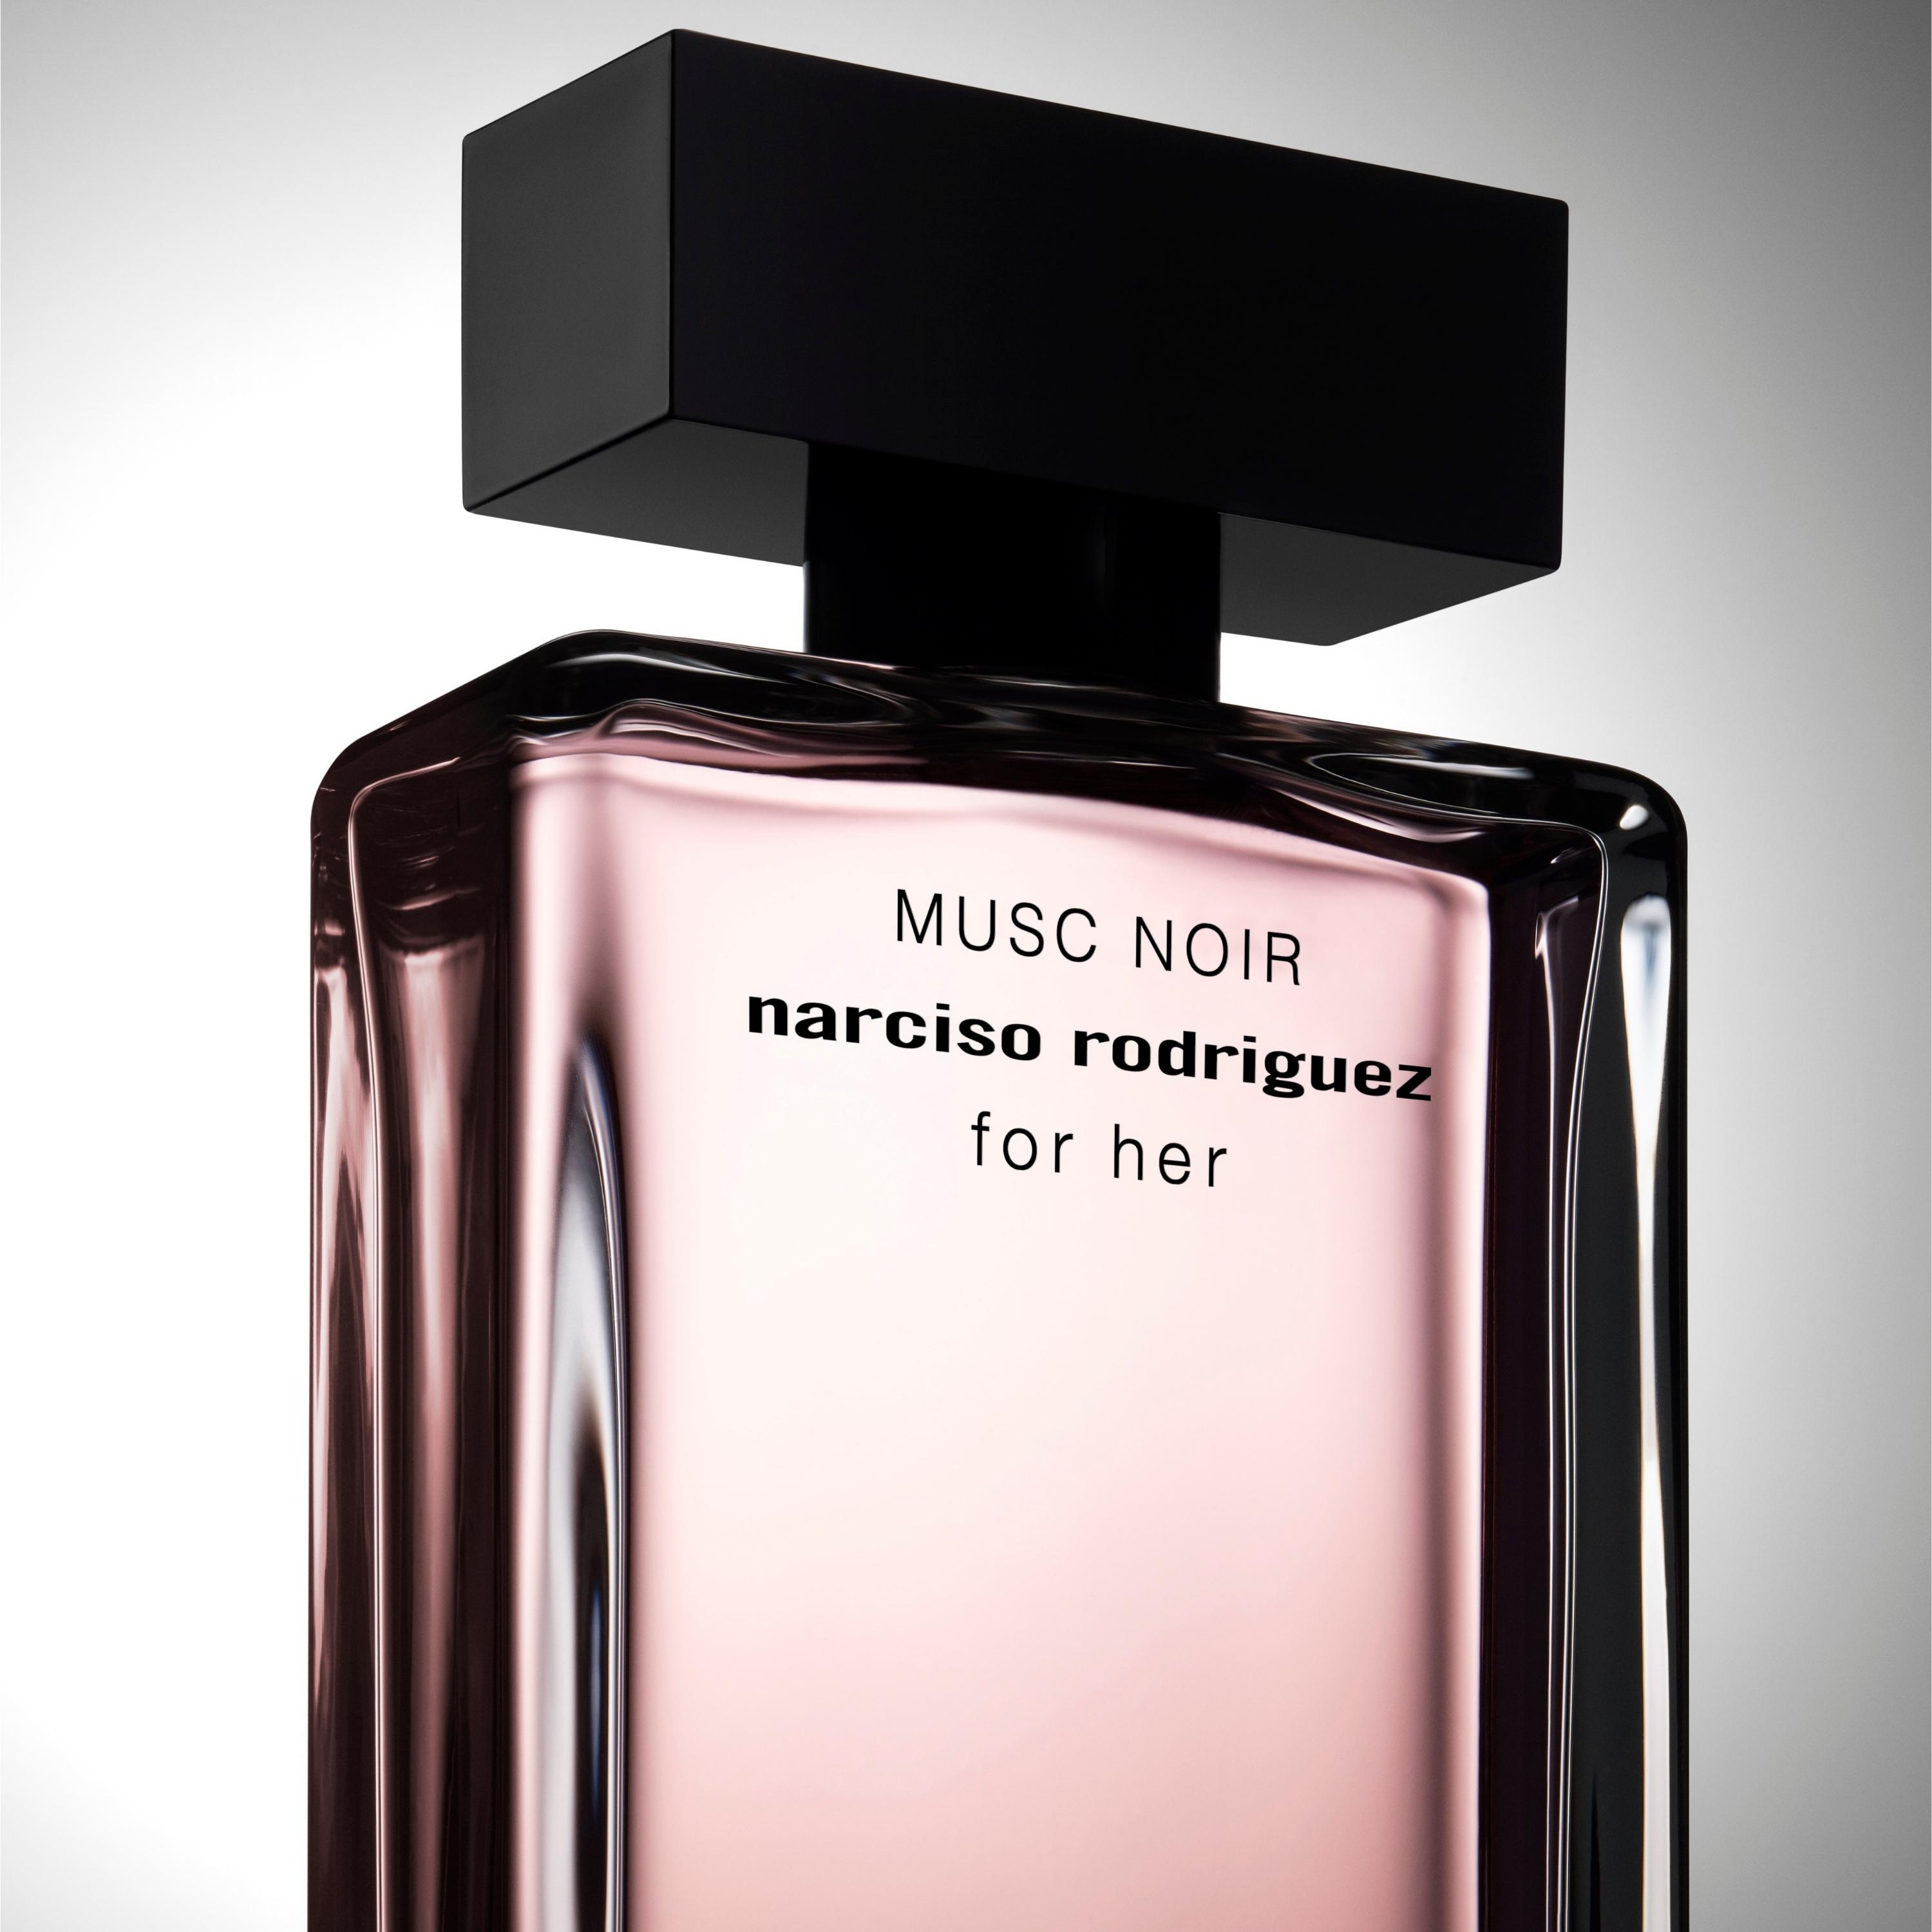 For Her Musc Noir Eau De Parfum • 50ml